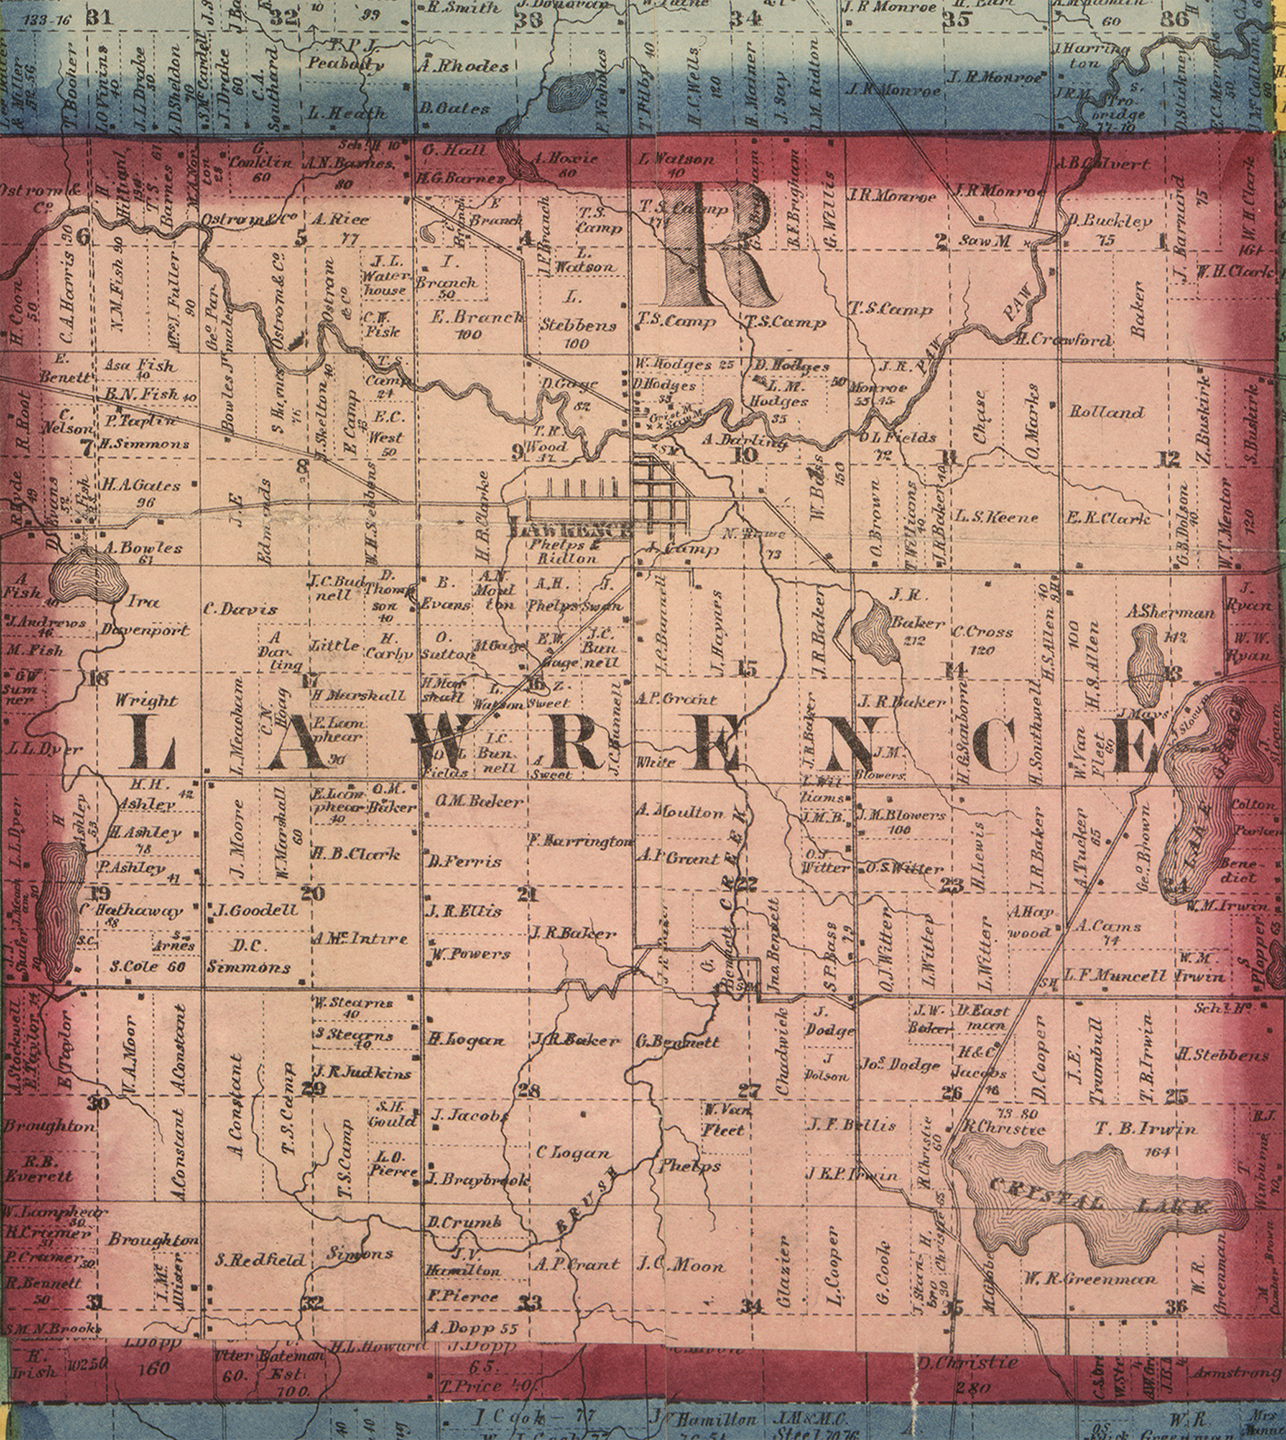 1860 Lawrence Township, Michigan landownership map